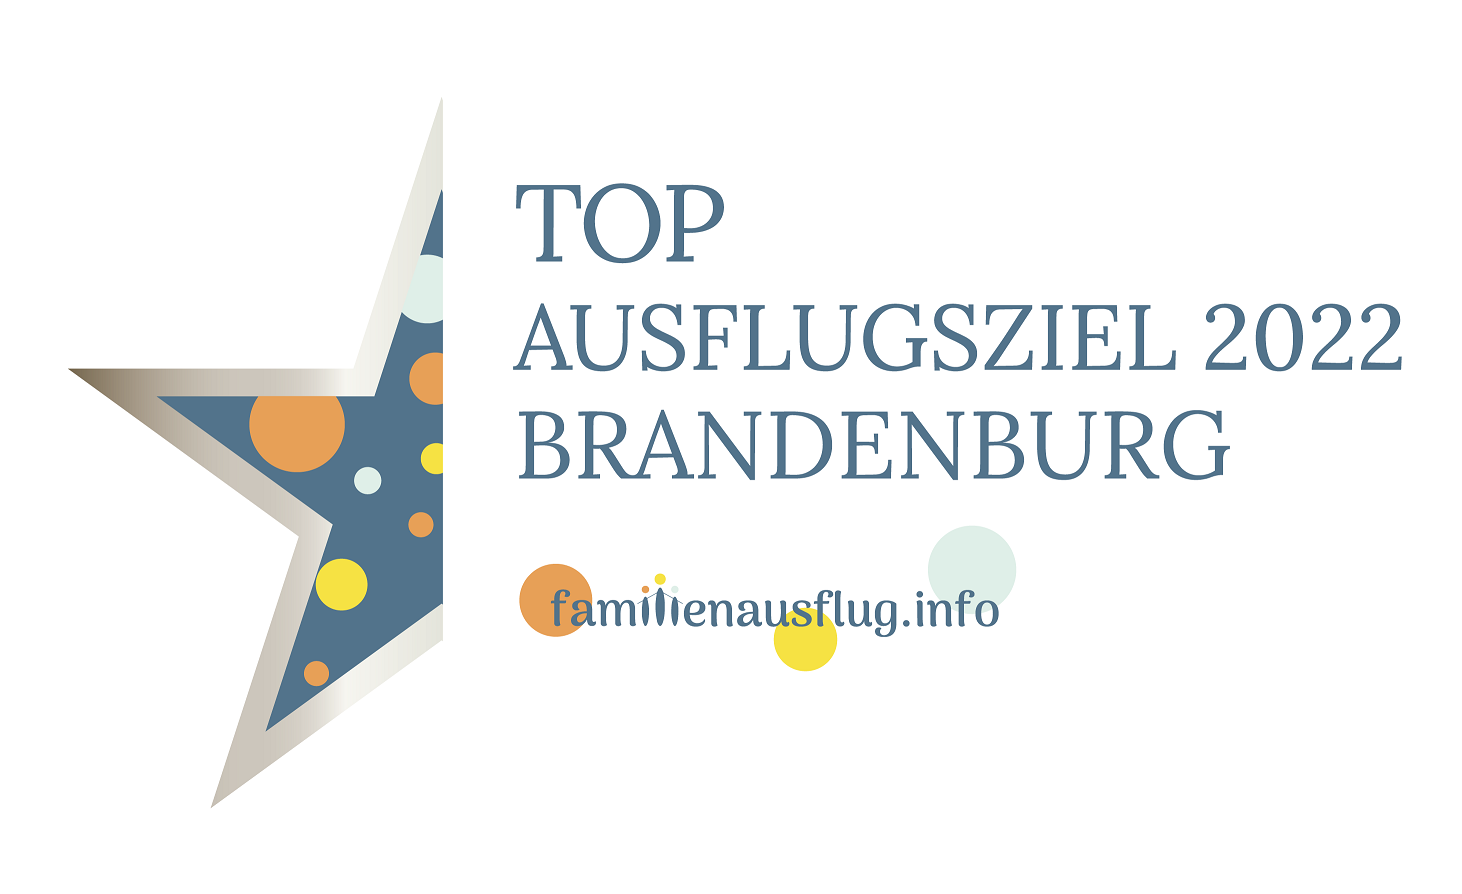 Partner Award_TOP_Excursion Destination of the Year_2022_Brandenburg